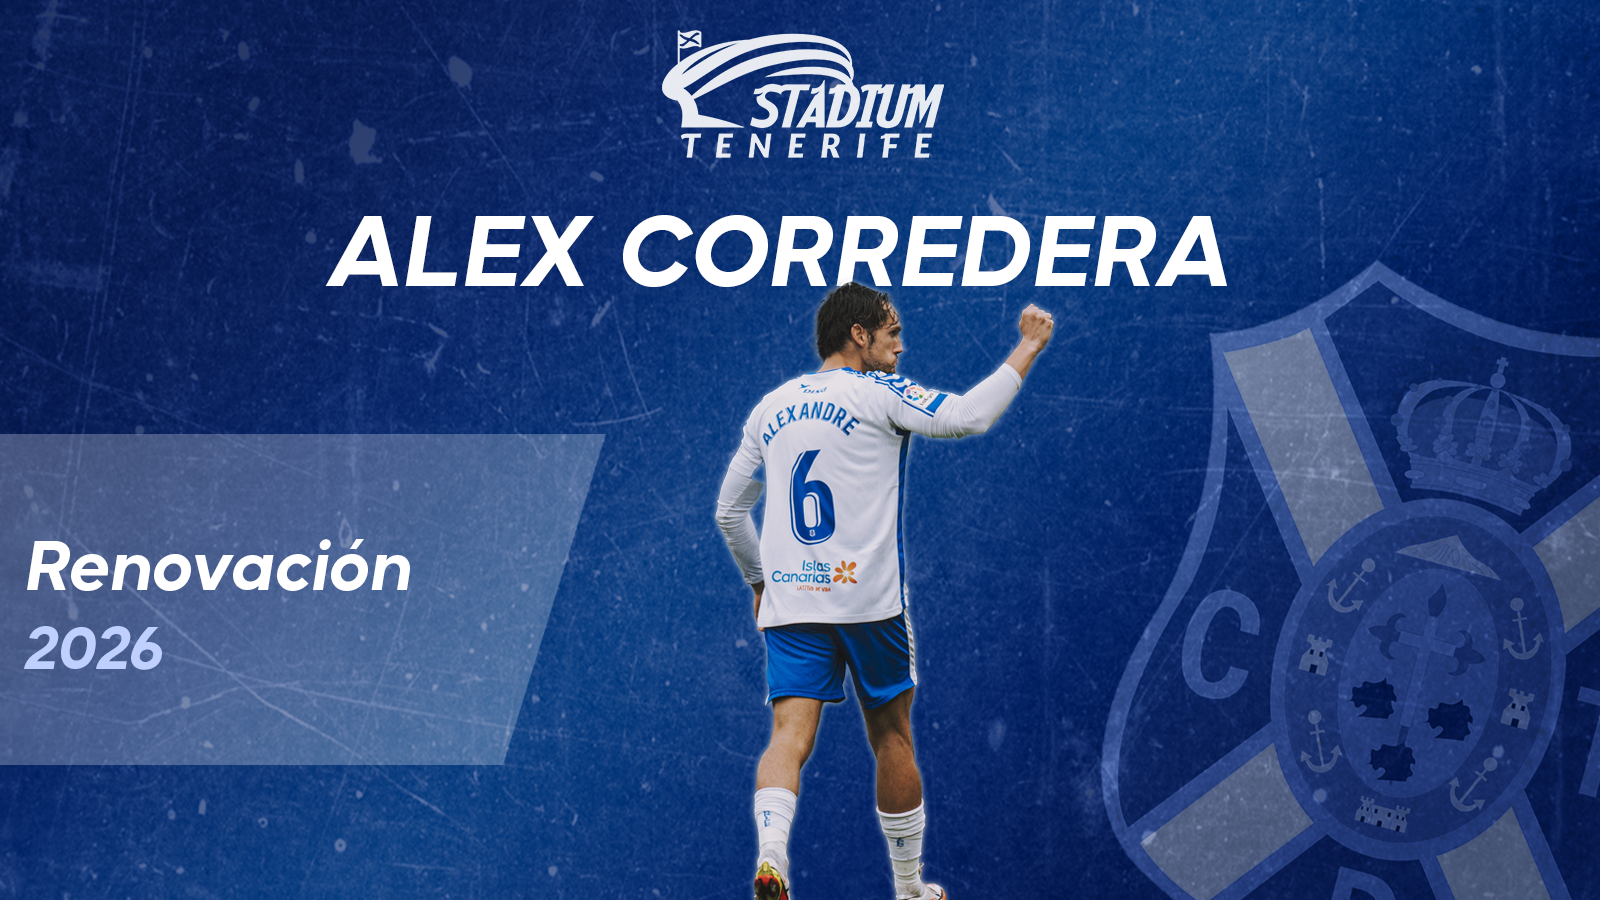 Oficial la renovación de Alex Corredera con el CD Tenerife hasta 2026